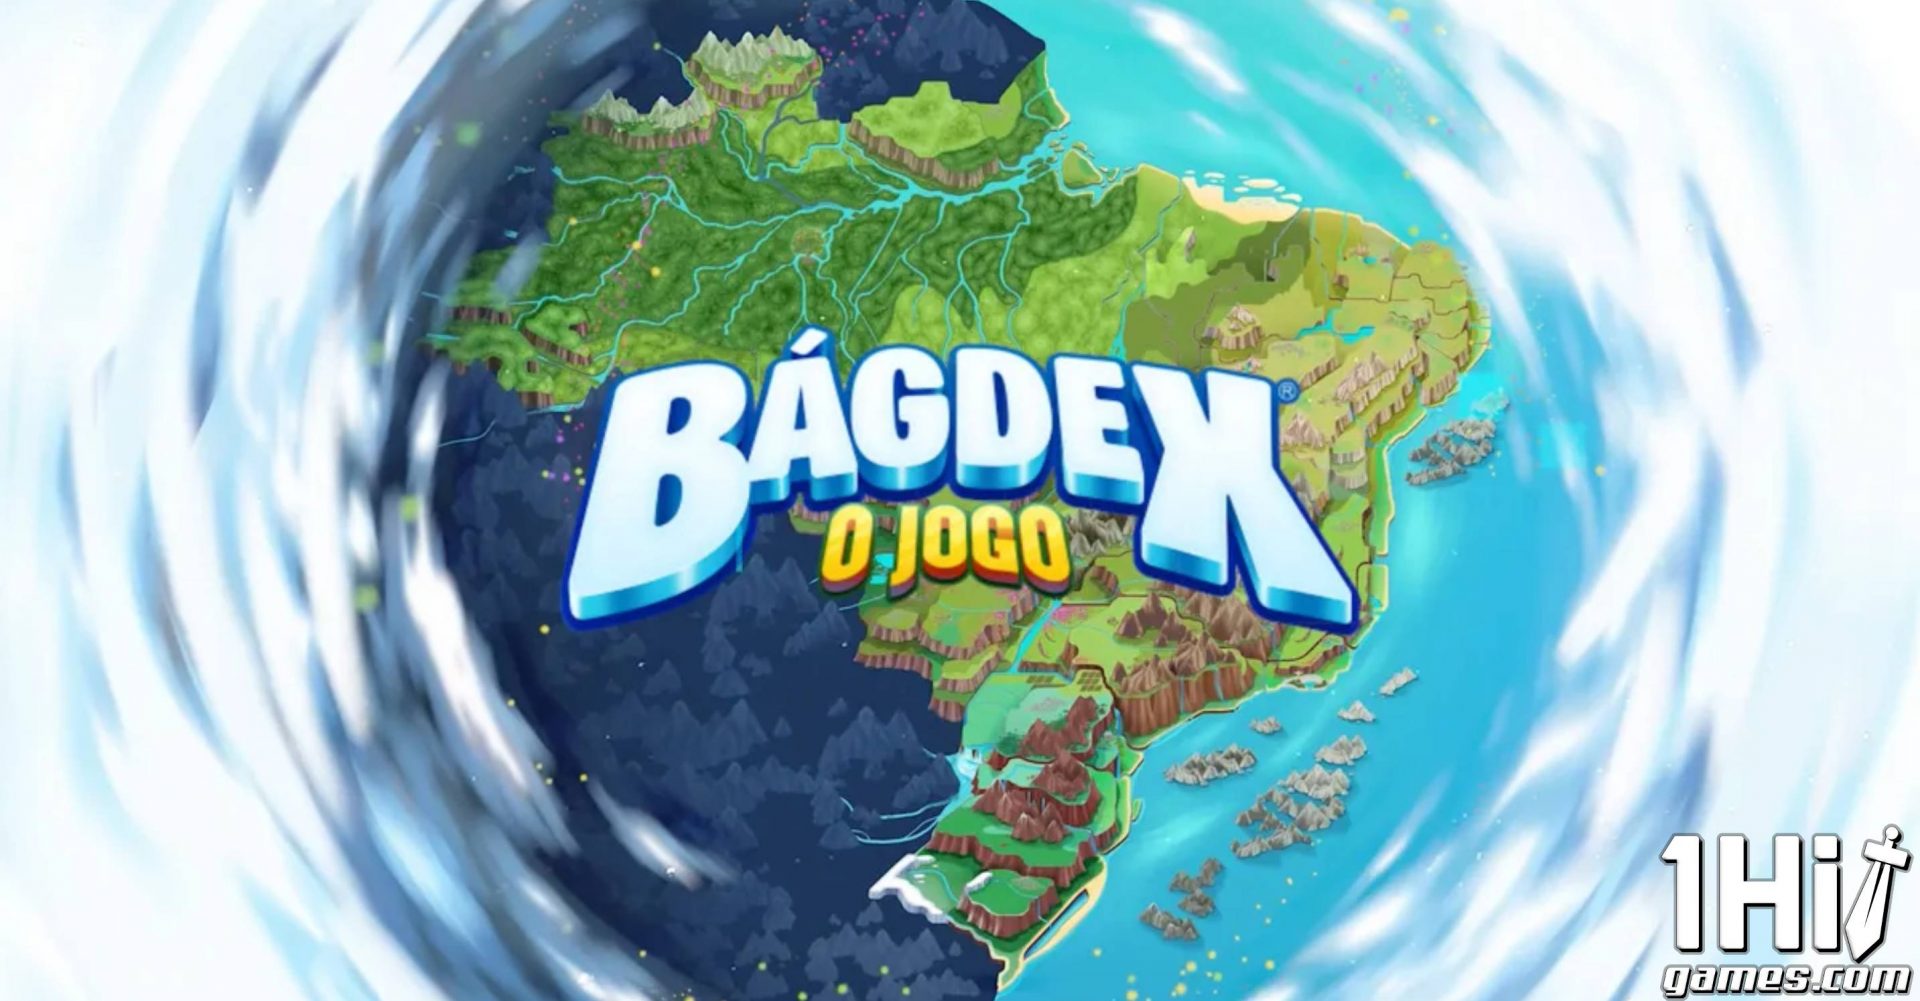 Bágdex, conheça o jogo Brasileiro estilo Pokémon